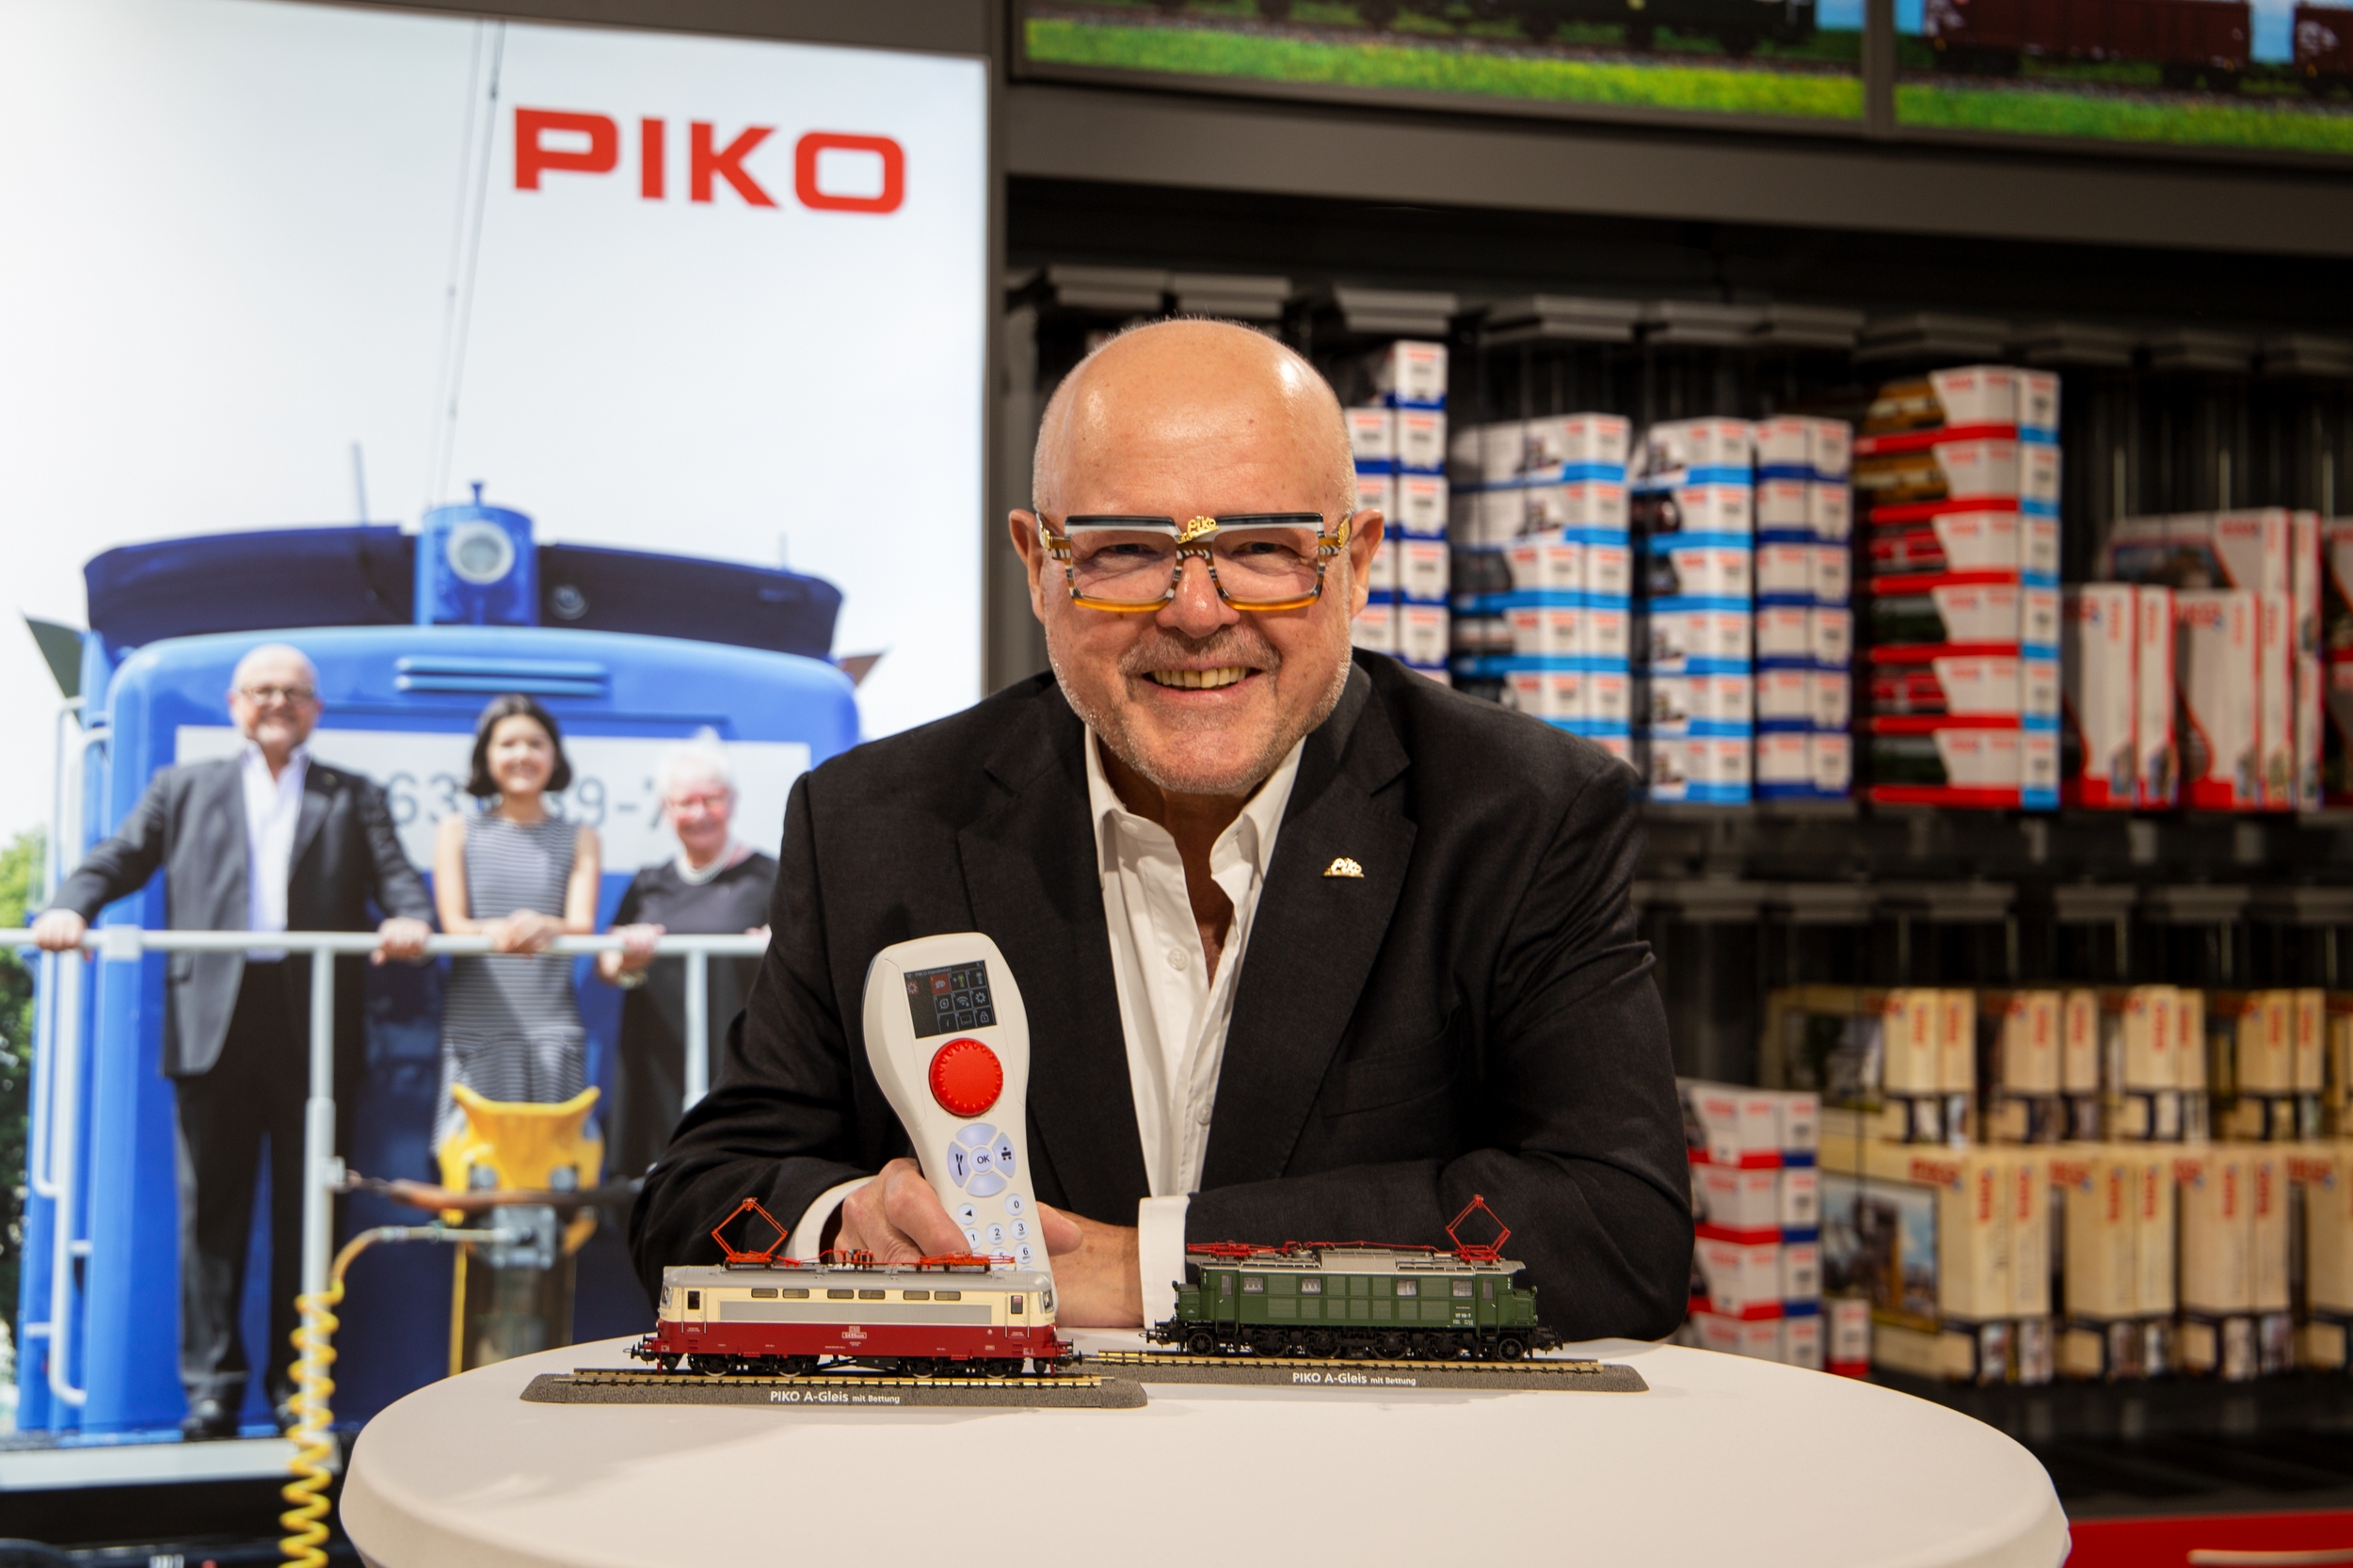 PIKO Inhaber, Herr Dr. Ren F. Wilfer, prsentiert erste Muster von 2023er H0 Neuheiten sowie die neue Digitalsteuerung PIKO SmartControlWLAN